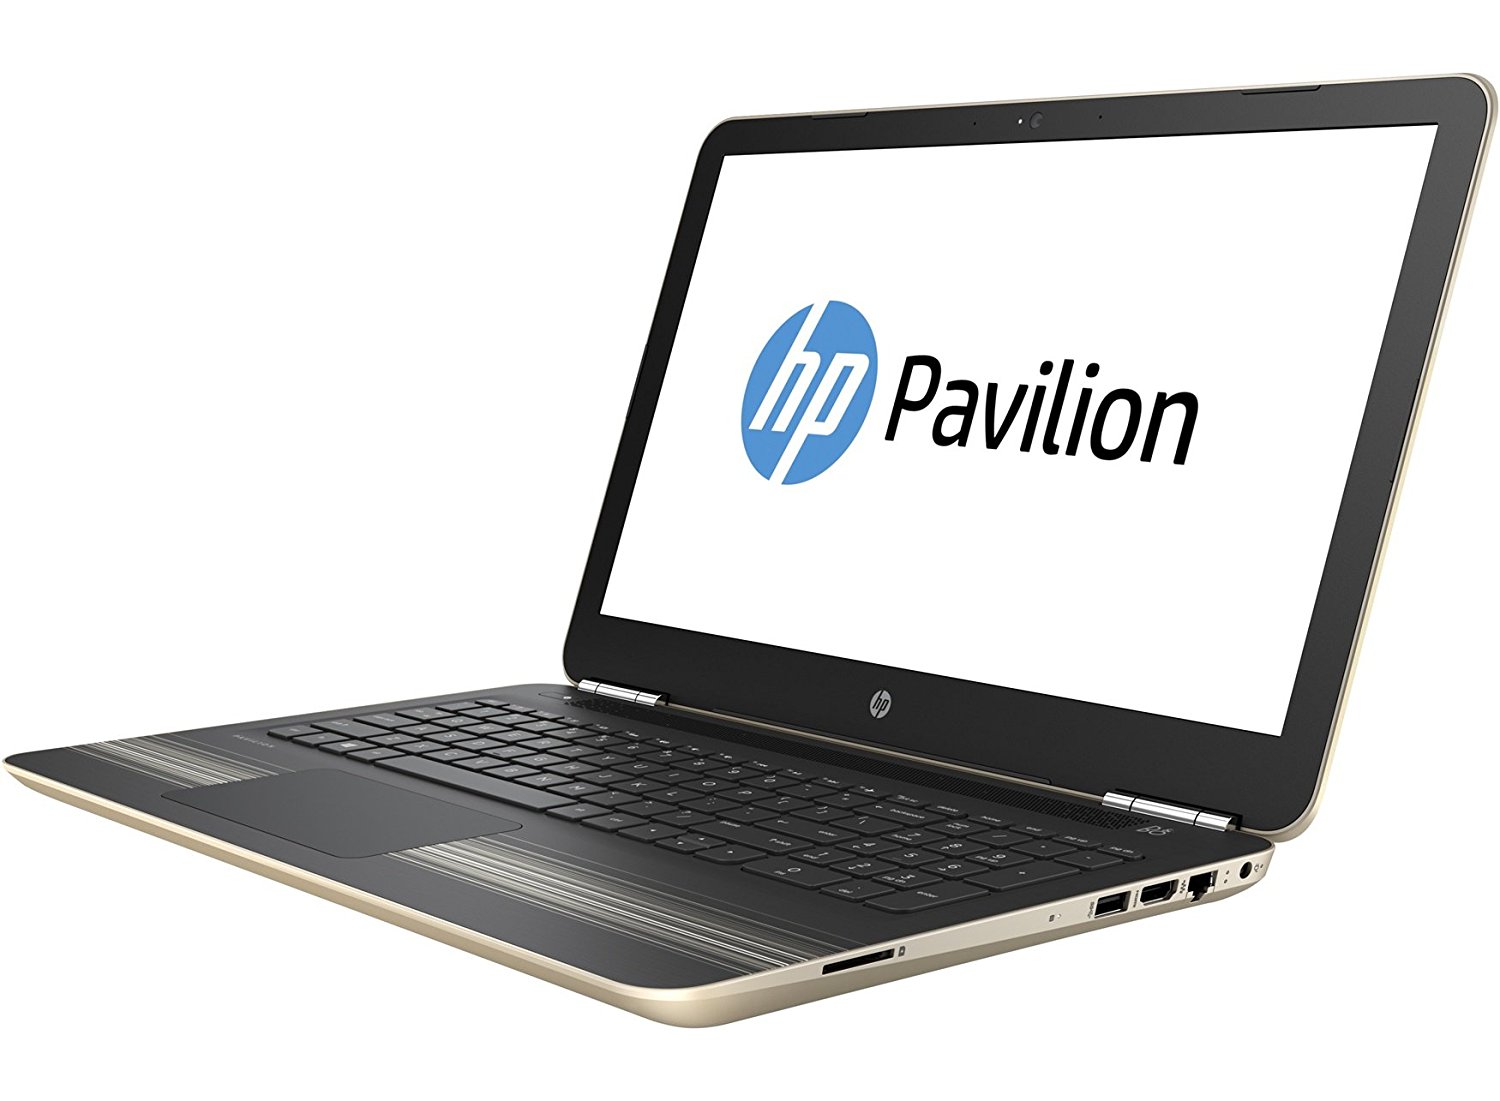 HP Pavilion 15 - i5-6200U · Intel HD Graphics 520 · 15.6”, HD 